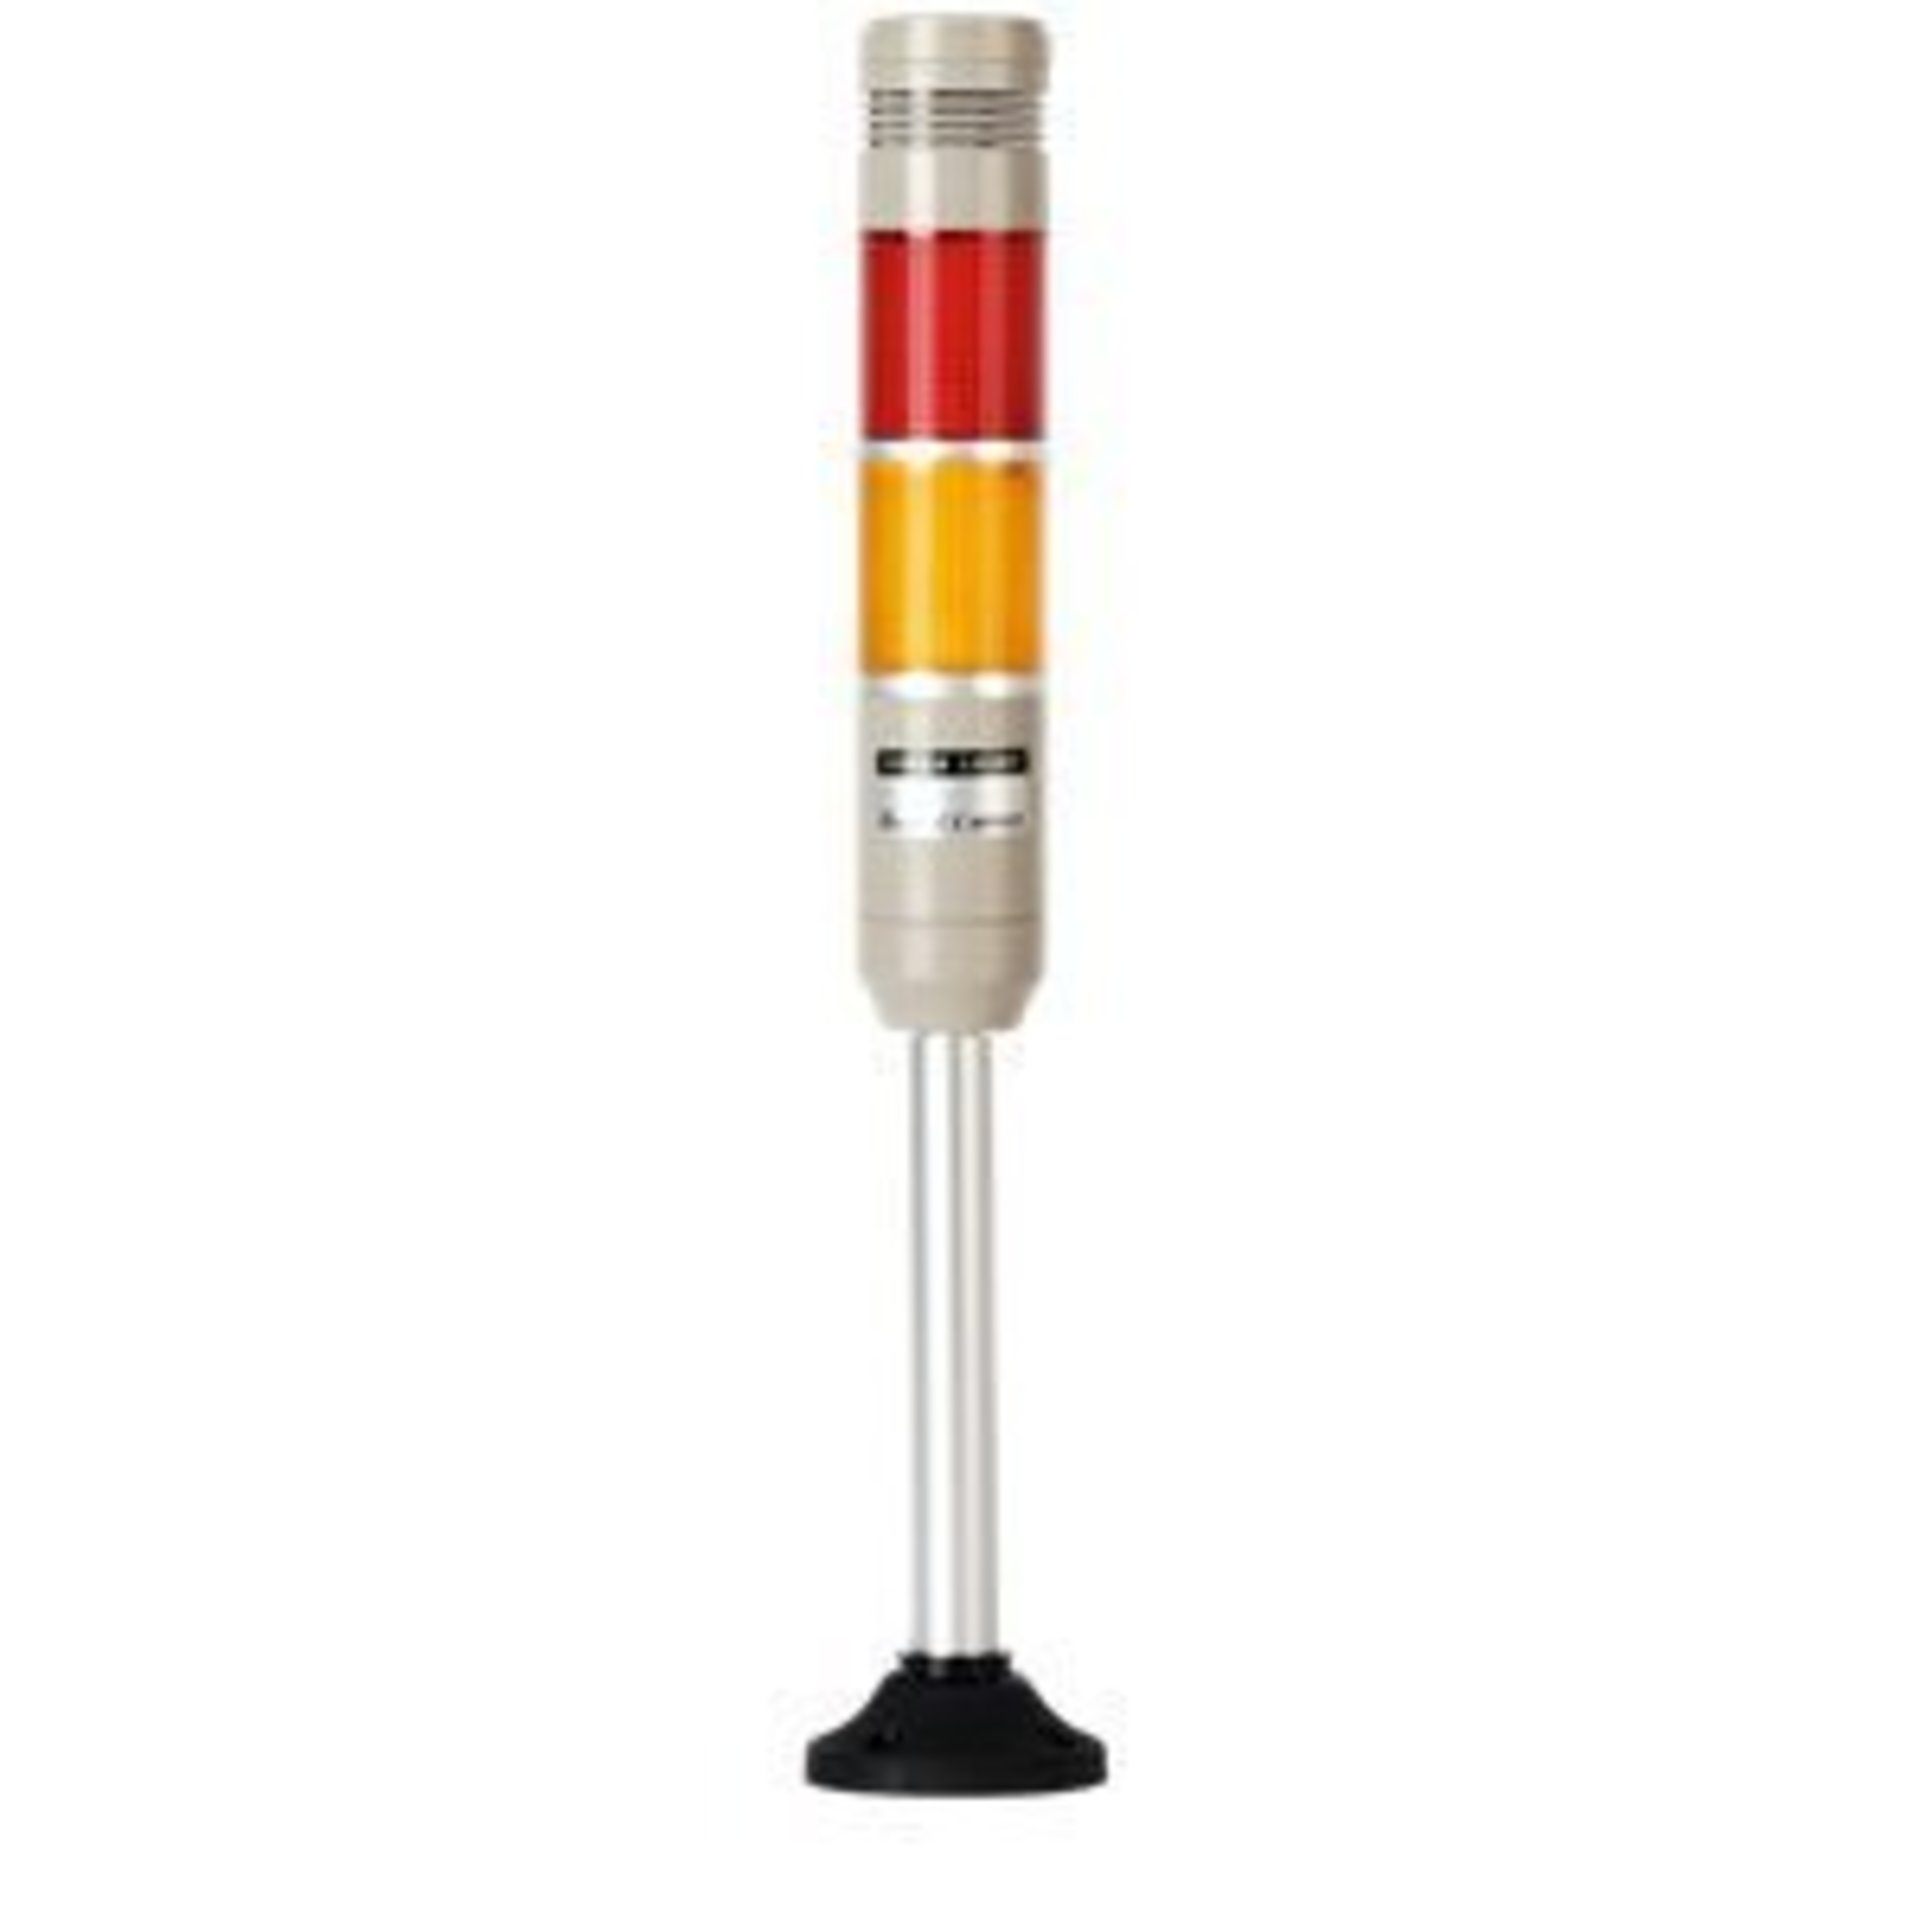 Сигнальная колонна с лампой накаливания MT5C-2ALPB-RY 24VAC, диаметр 56 мм — постоянное + мигающее свечение, 2 секции, 24В =/~, выводные провода, Стойка + монтажное основание, Зуммер, красный + желтый